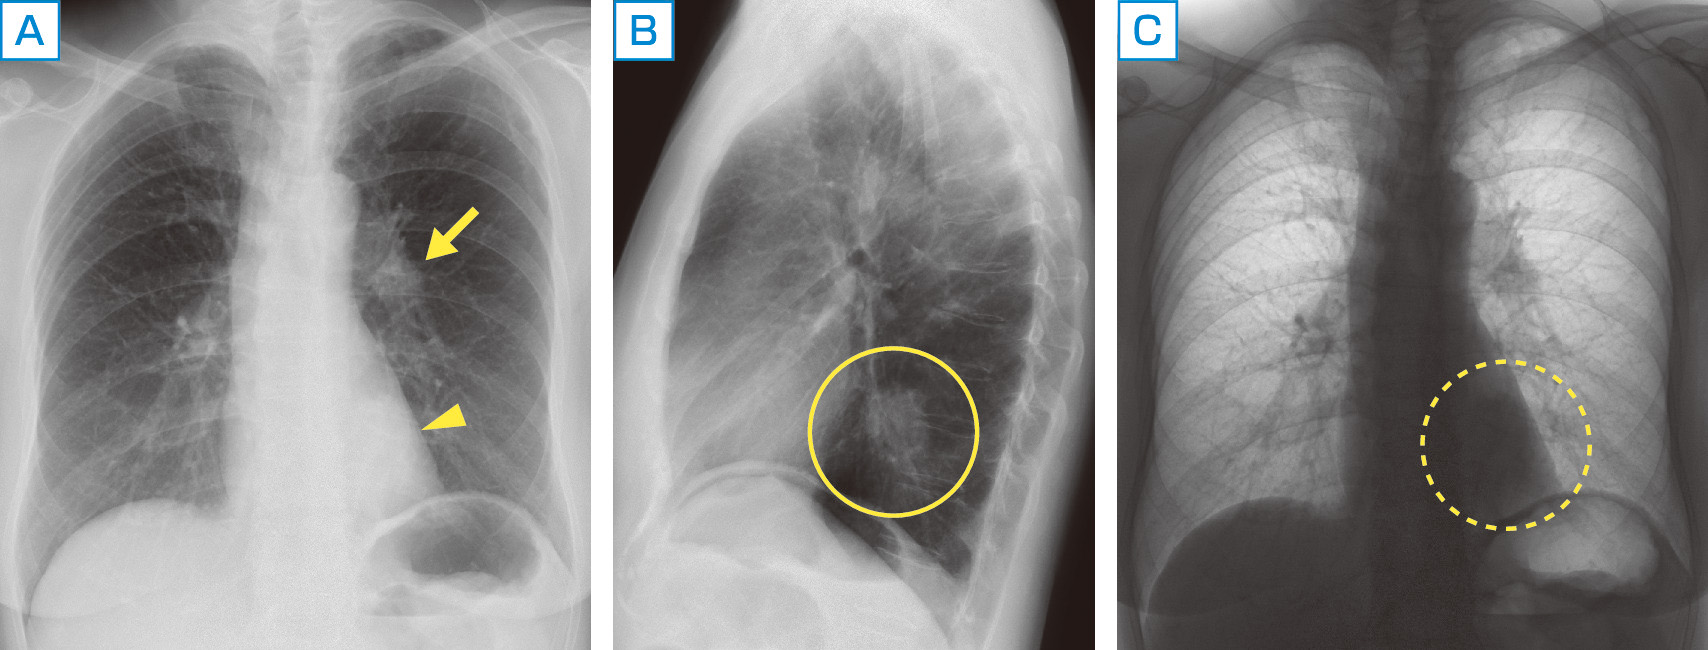 ⓔ図10-12-1　肺腺癌症例の胸部X線像 A：正面像では心陰影に重なって原発巣 (矢頭) の確認が難しい．左肺門部リンパ節腫大 (矢印) が確認される． B：側面像では心臓背側の原発巣が鮮明に確認できる． C：正面像を白黒反転させると原発巣が確認しやすくなる．